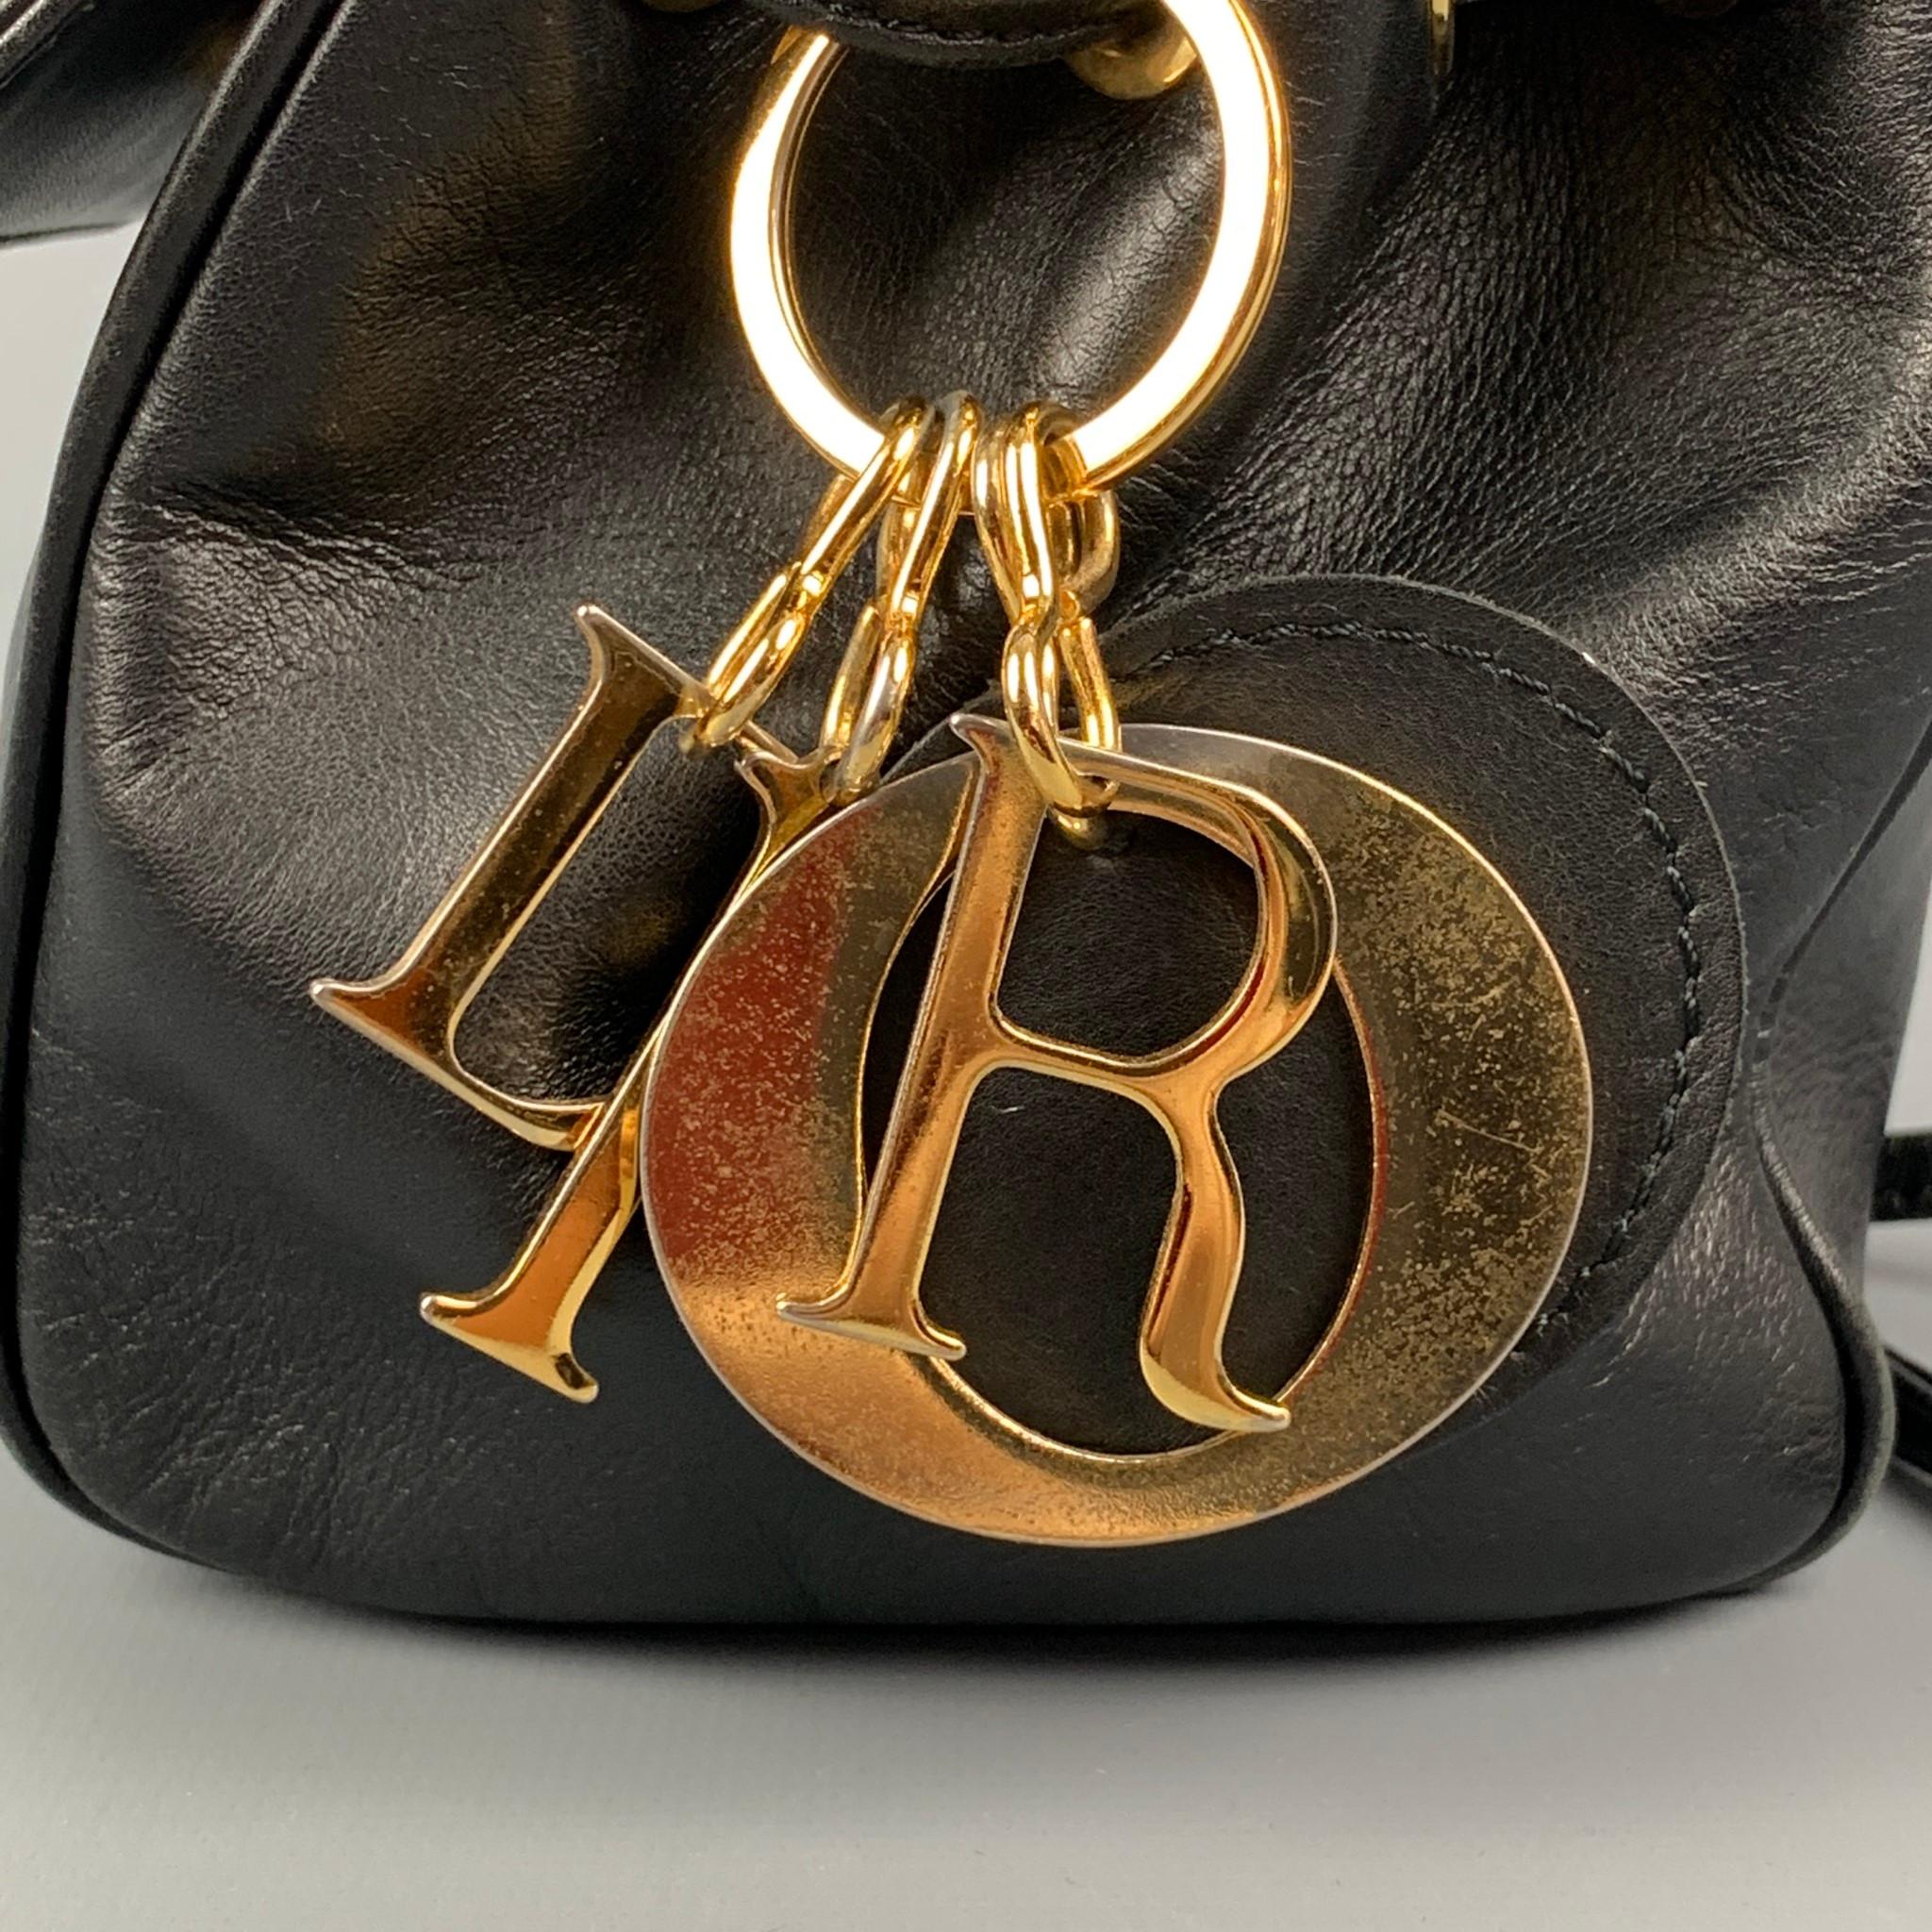 gold mini handbag